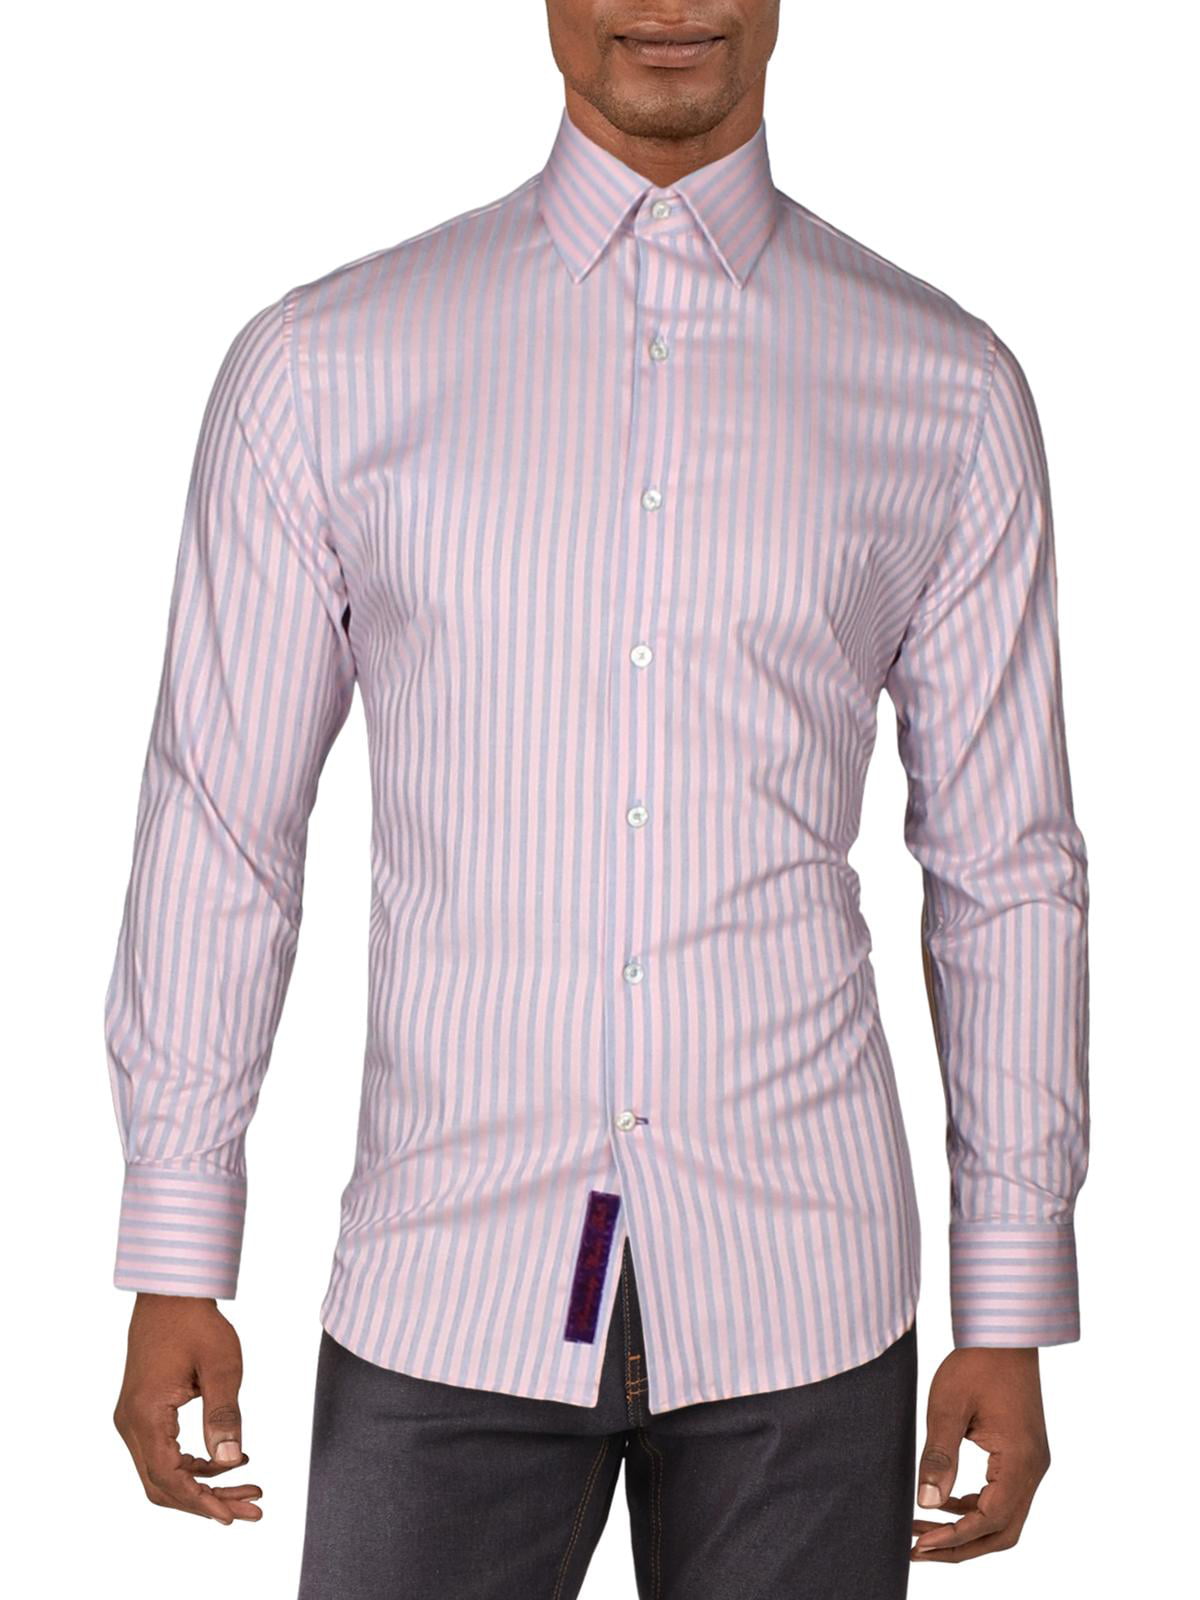 Robert Graham Mens Kodiak Striped Button-Down Shirt Long Sleeves BHFO 8118 